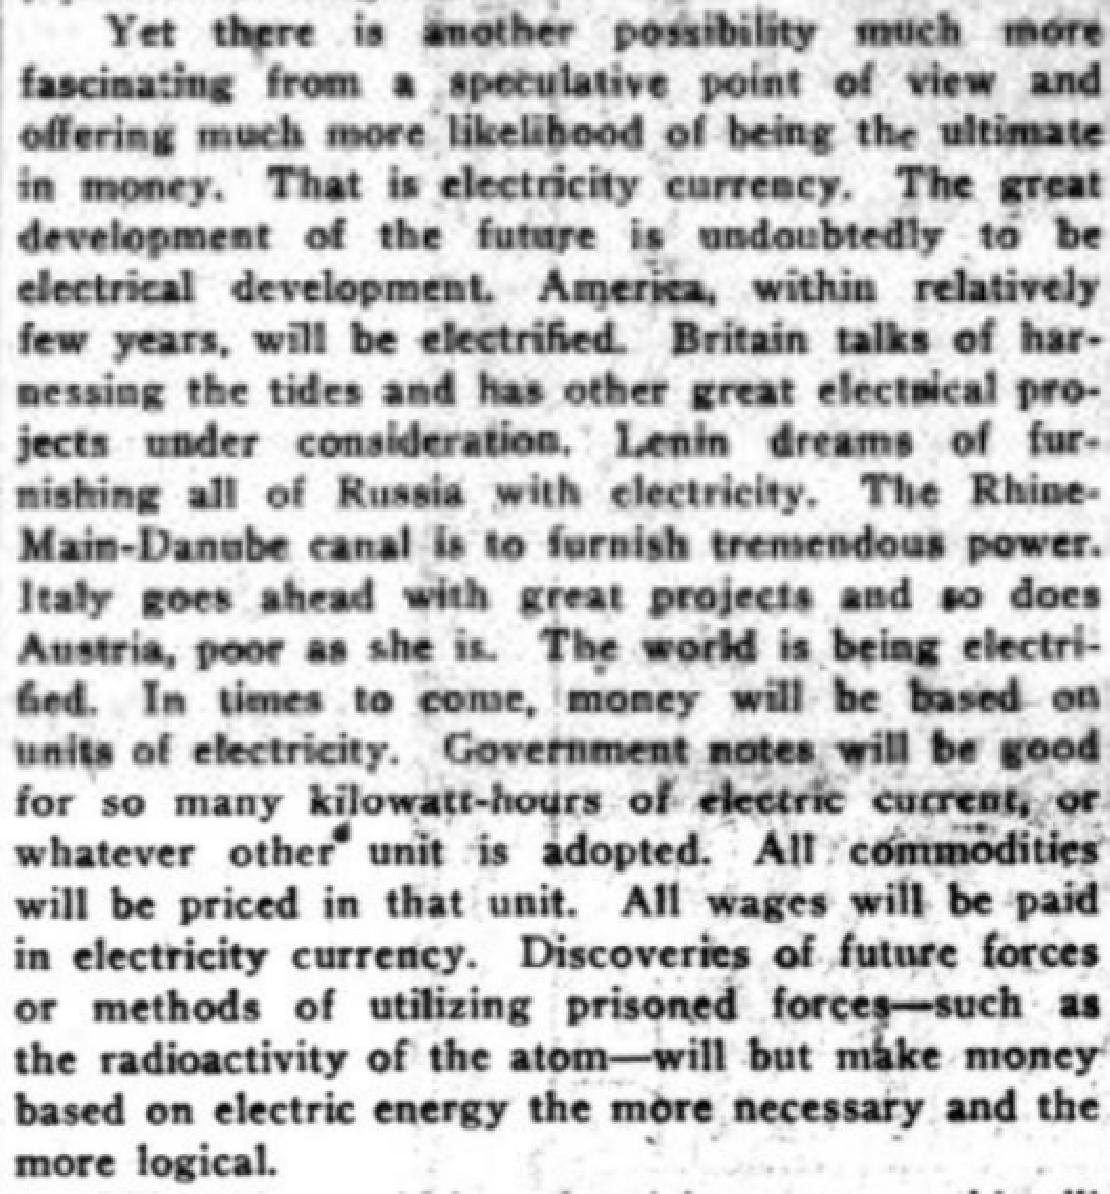 Részlet a The Washington Herald 1922-es cikkéből, amiben azt részletezik, hogy már csak idő kérdése és a világ az elektromos pénzen fog alapulni. 